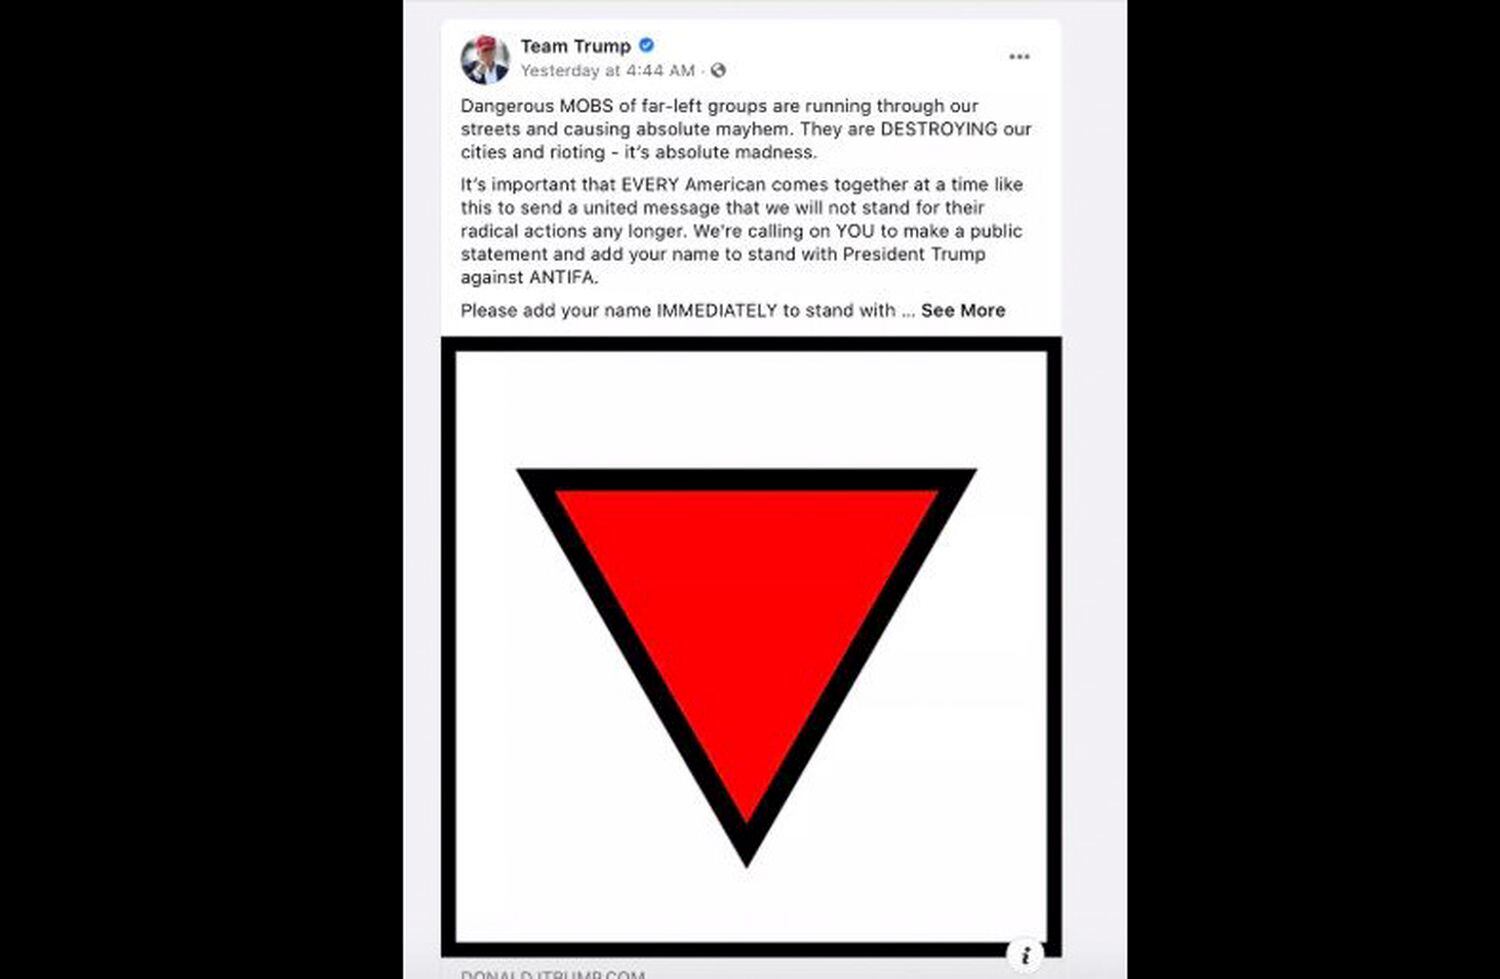 Captura do anúncio da campanha de Trump com o triângulo vermelho invertido, nesta quinta-feira.